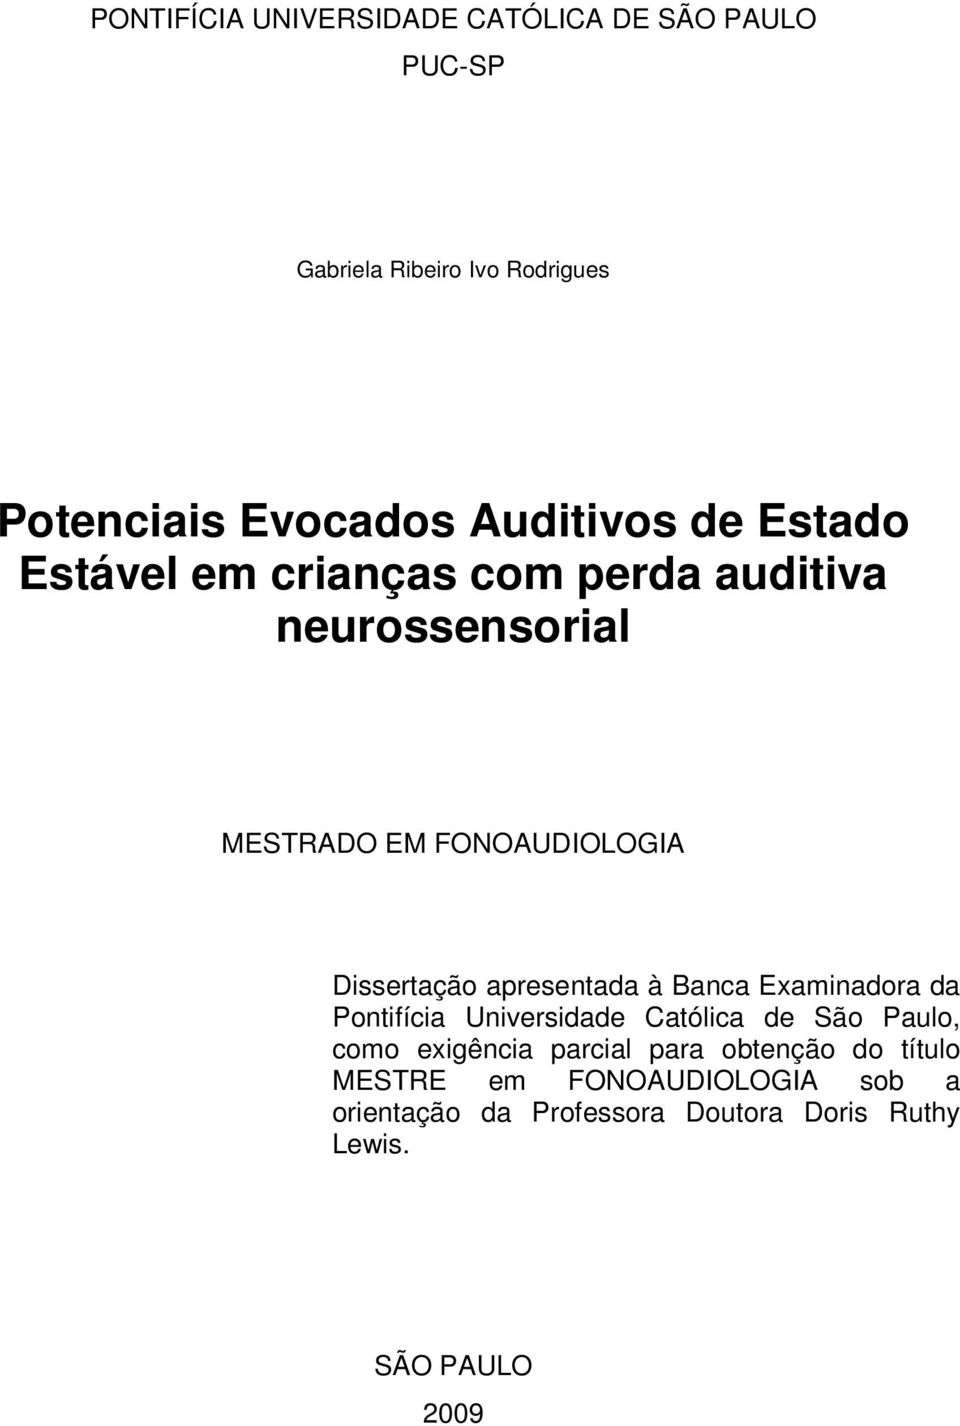 Dissertação apresentada à Banca Examinadora da Pontifícia Universidade Católica de São Paulo, como exigência